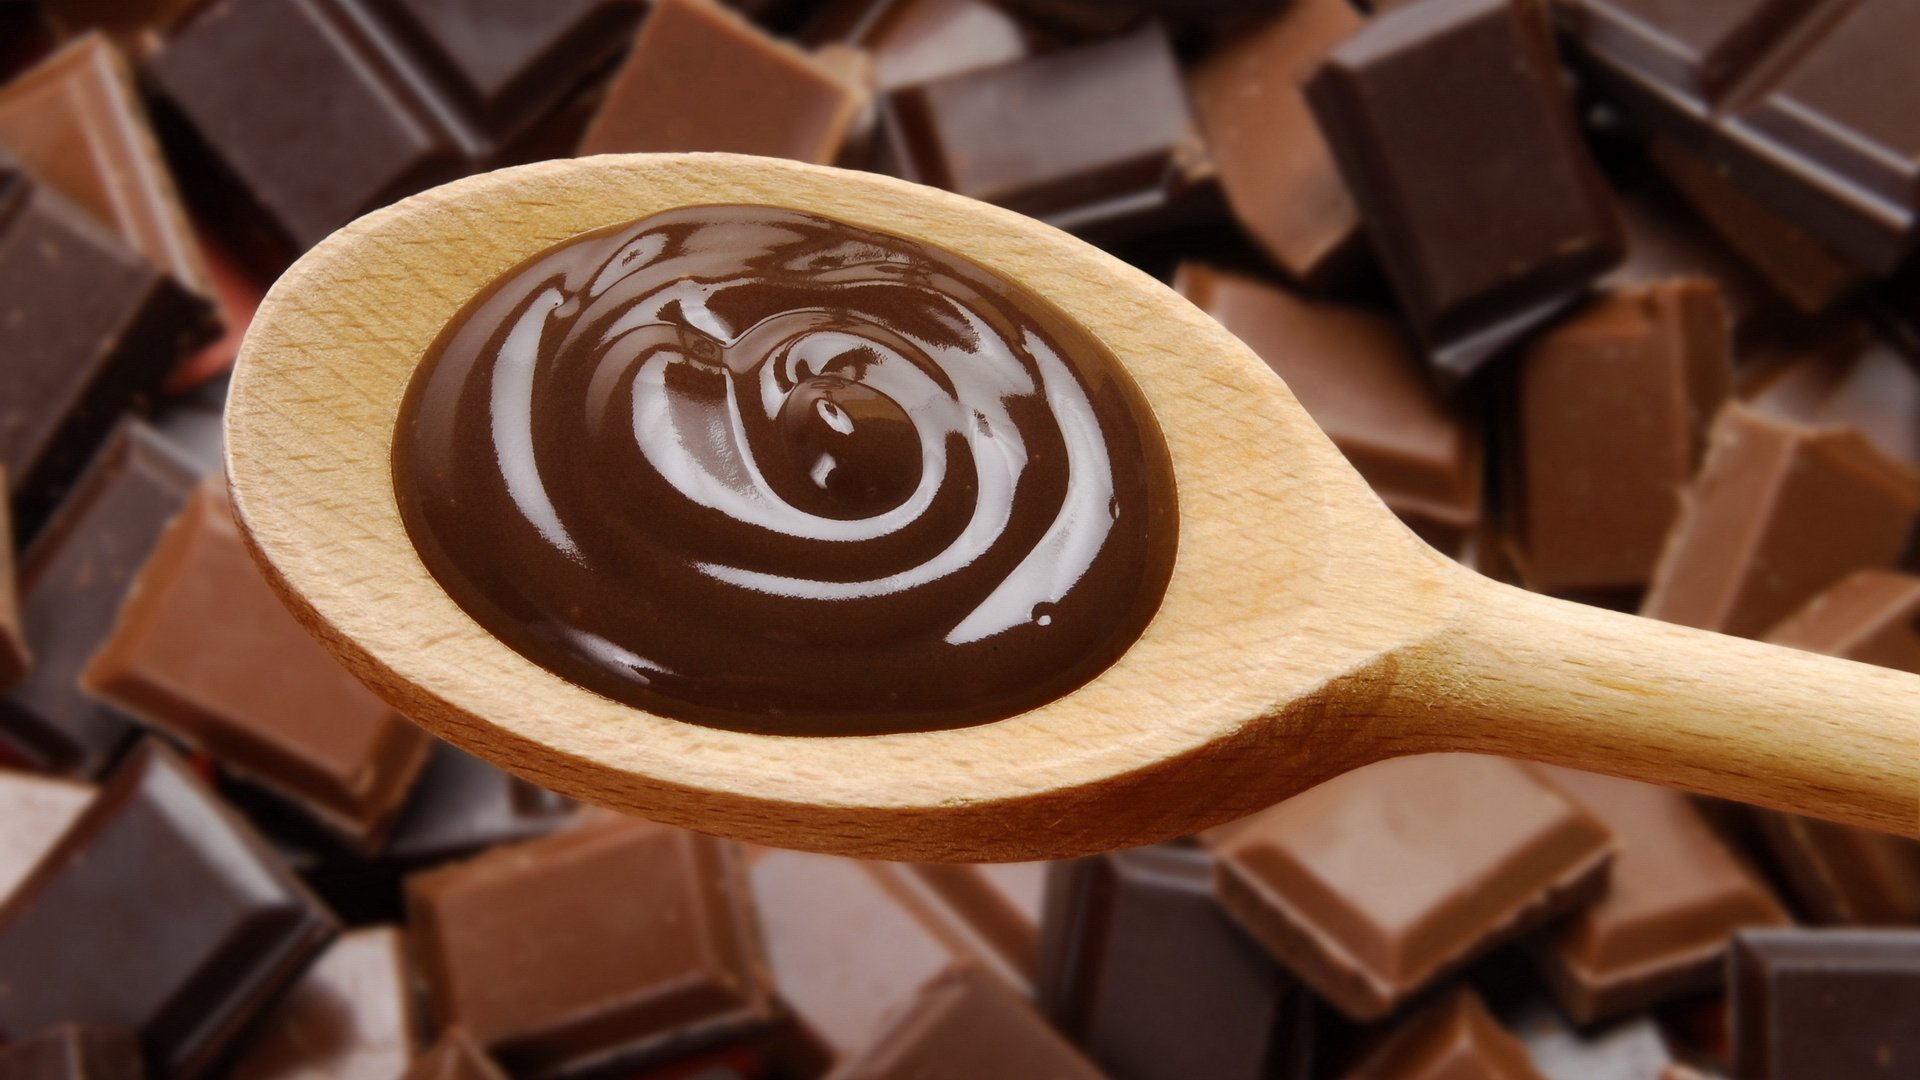 Ну шоколадом. Жидкий шоколад. Растопленный шоколад. Плавленный шоколад. Красивый шоколад растопленный.